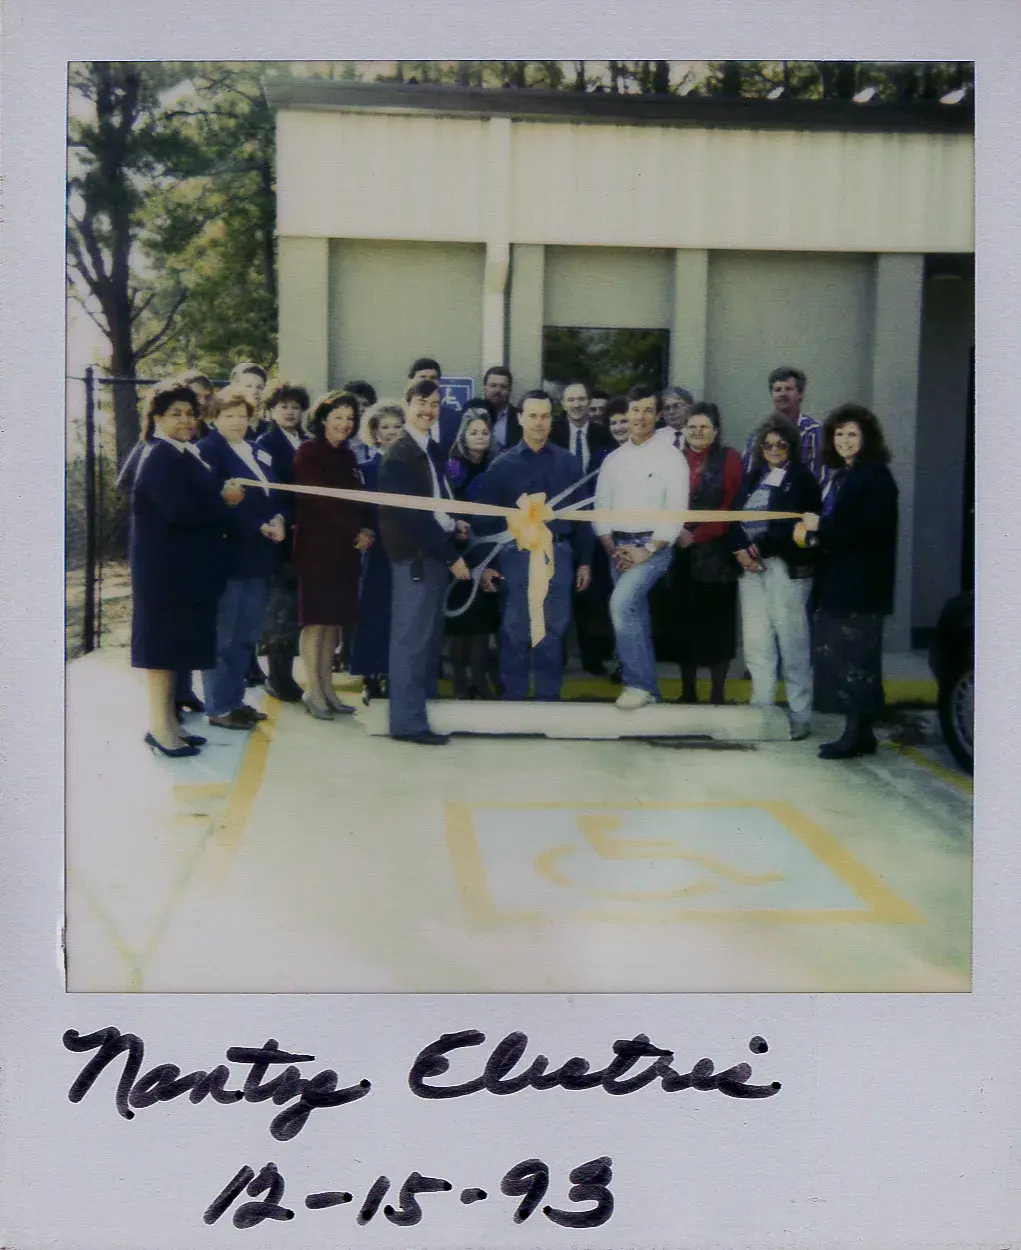 Nantze, Inc. team in 1993